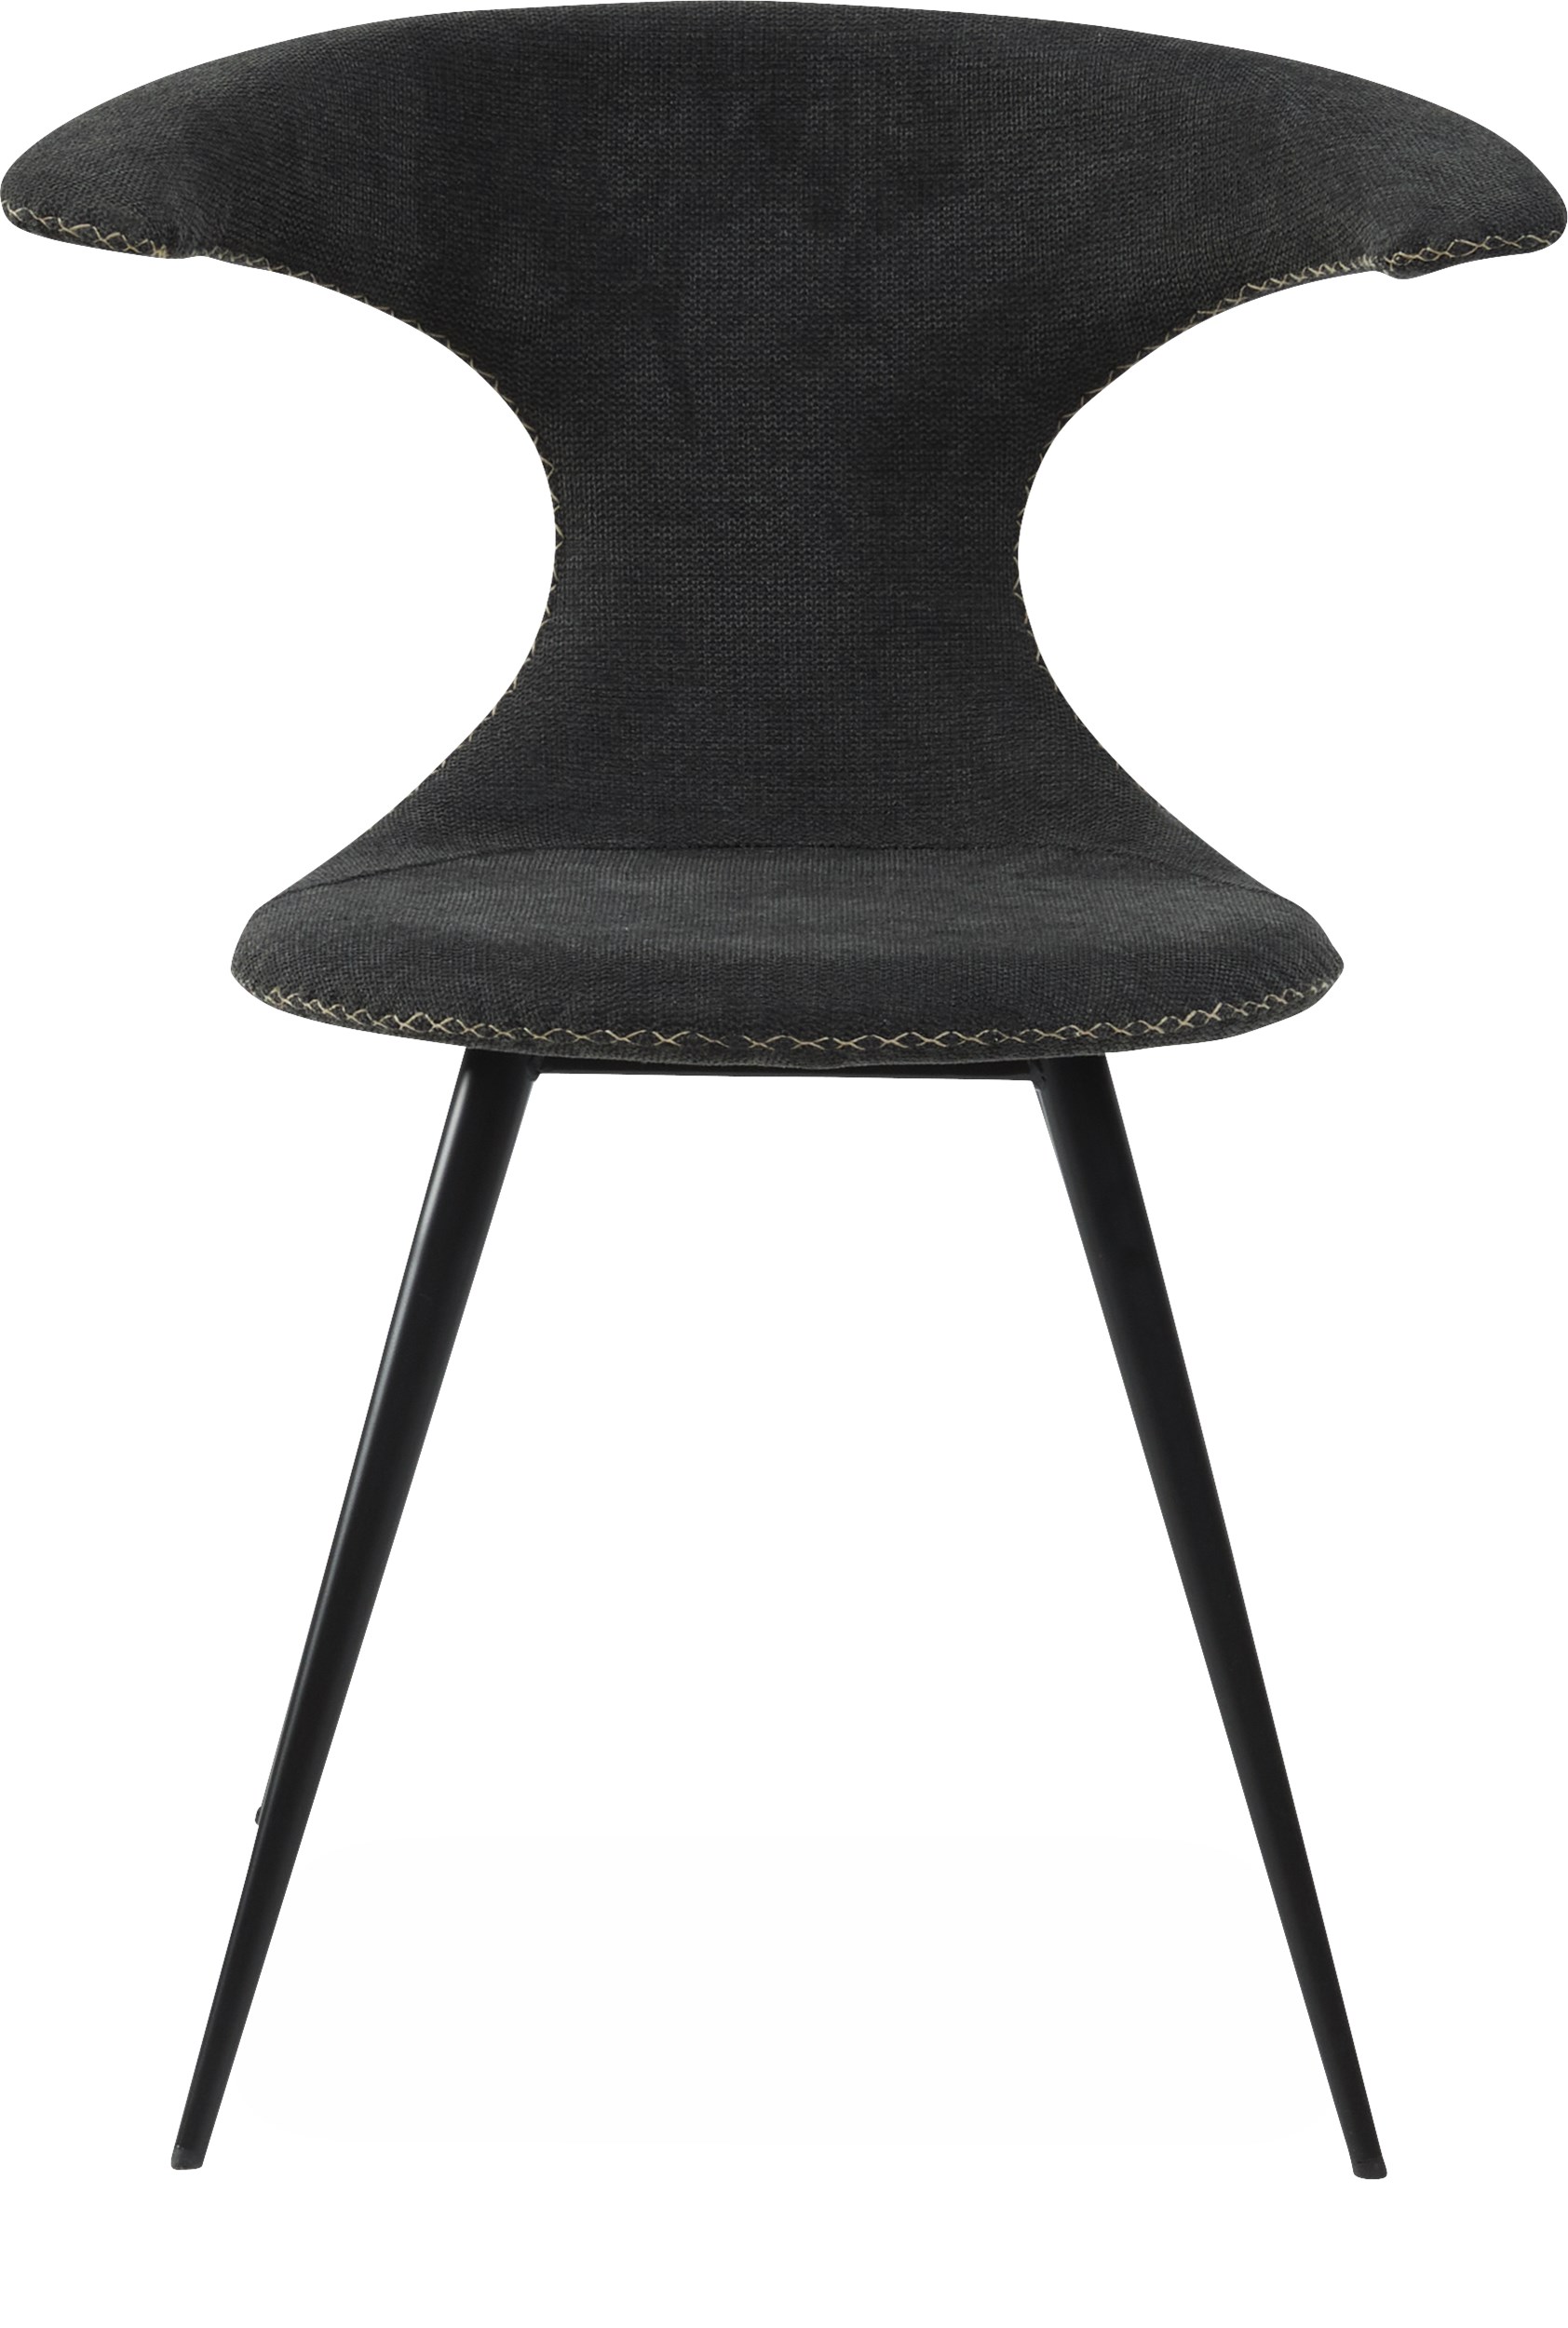 Flaire matstol - Sits i crow black textil, med kontrastfärgade sömmar och runda ben i svartlackerad metall